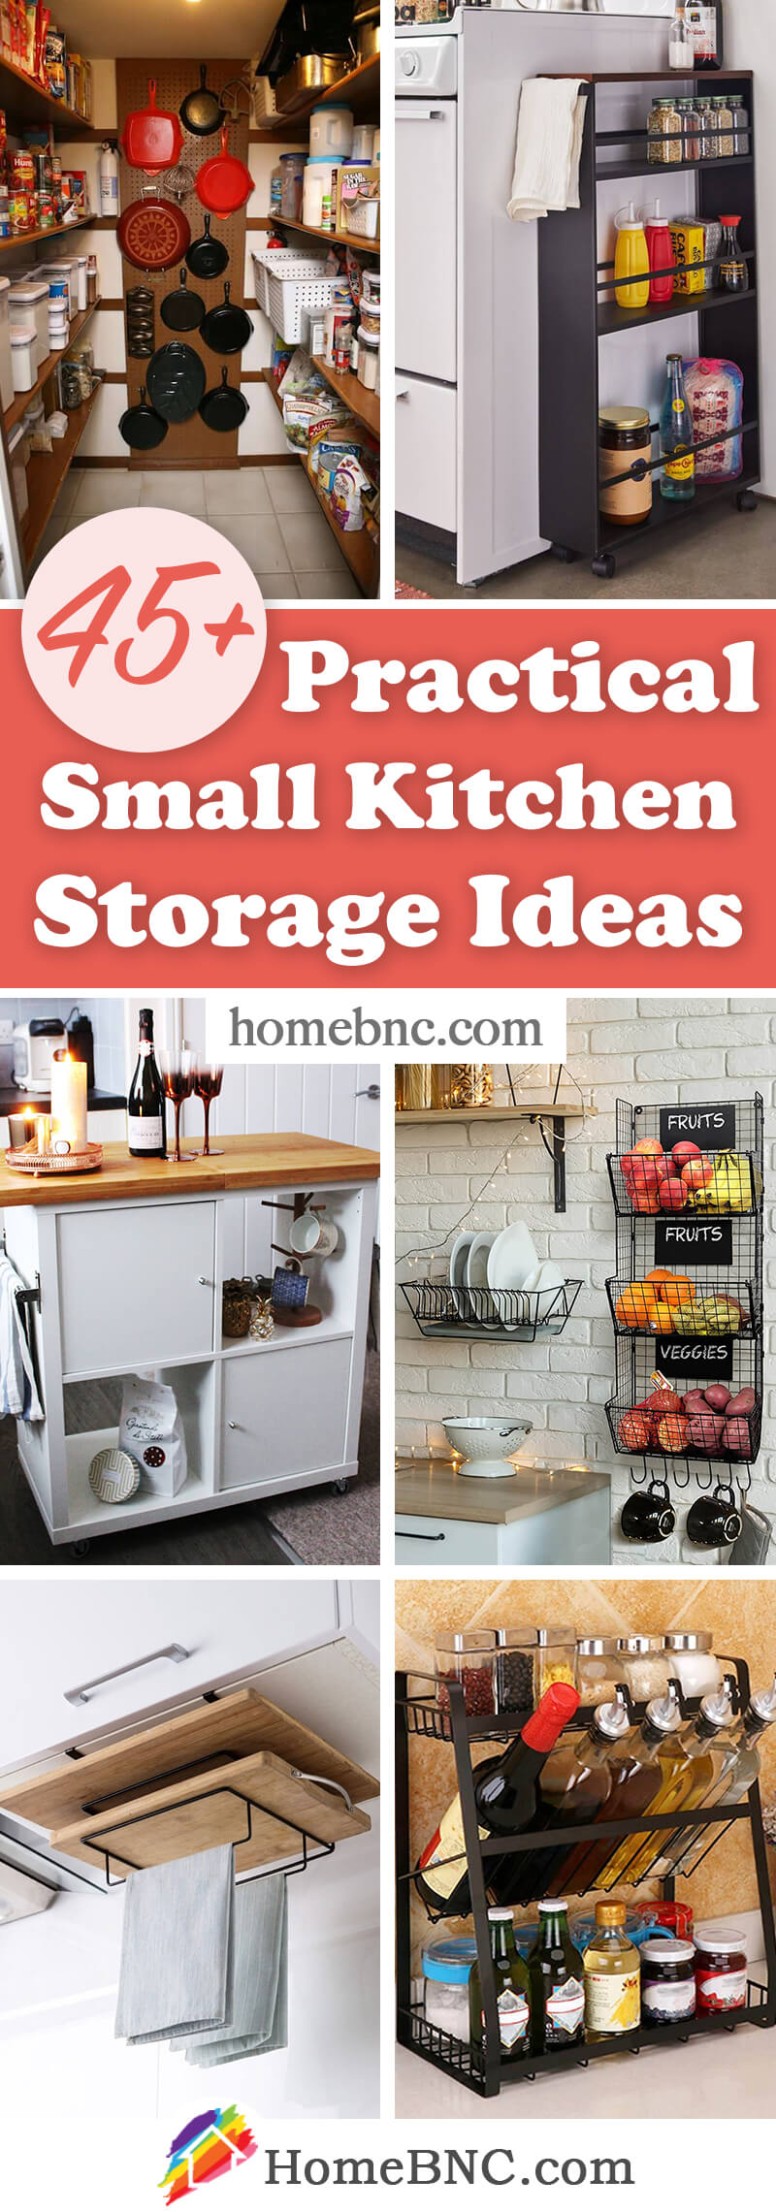 7+ Best Small Kitchen Storage Organization Ideas and Designs for 7 - small kitchen storage ideas